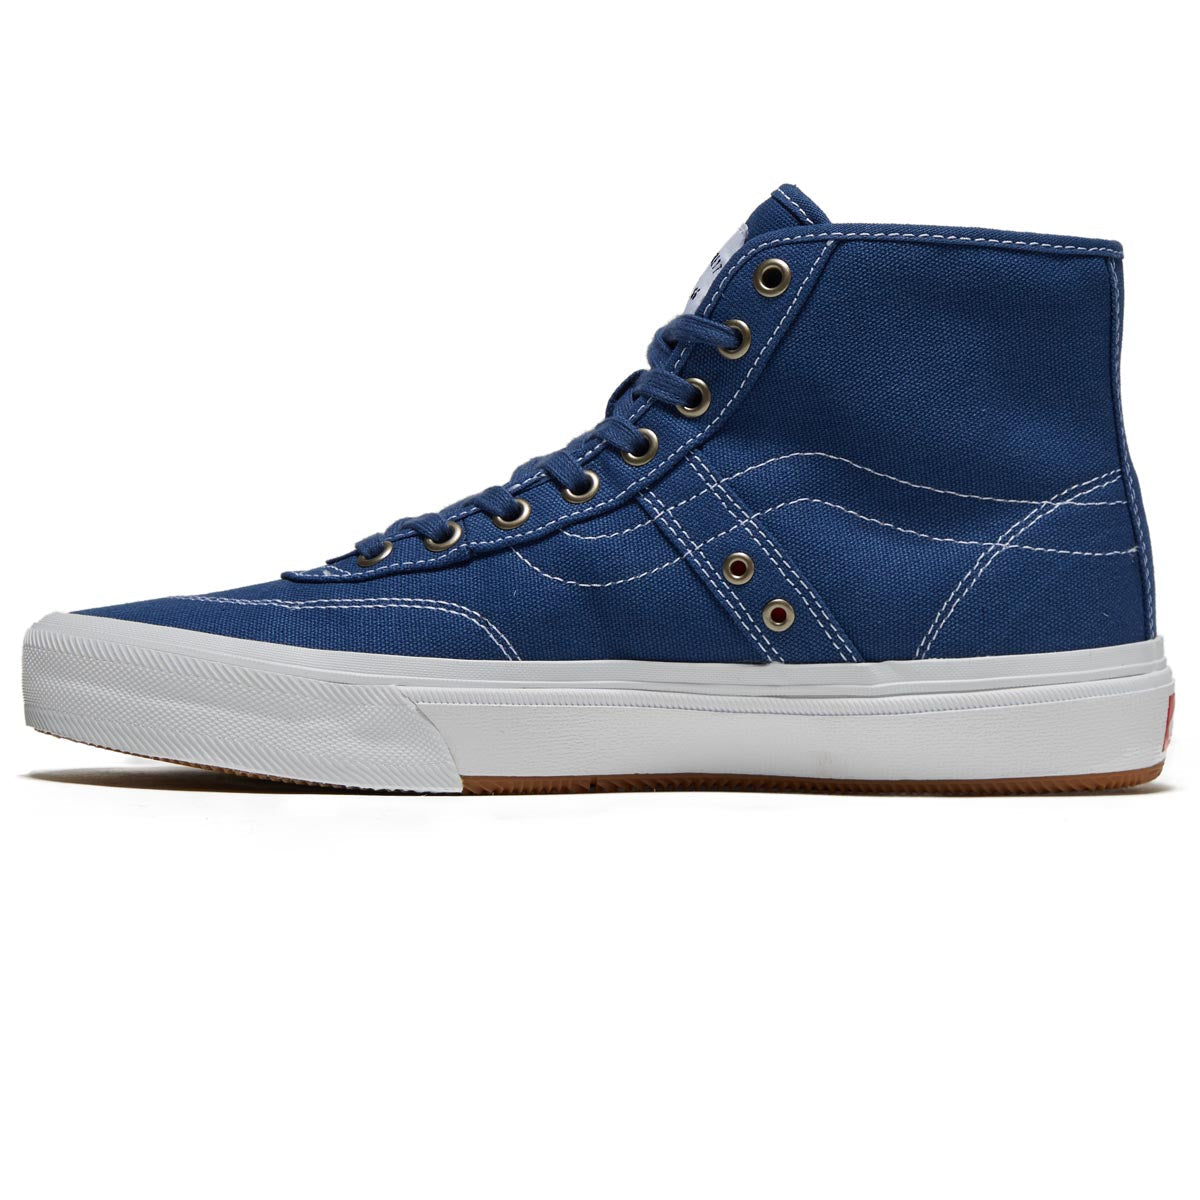 Vans Crockett High Decon Shoes - Canvas Blue/White image 2